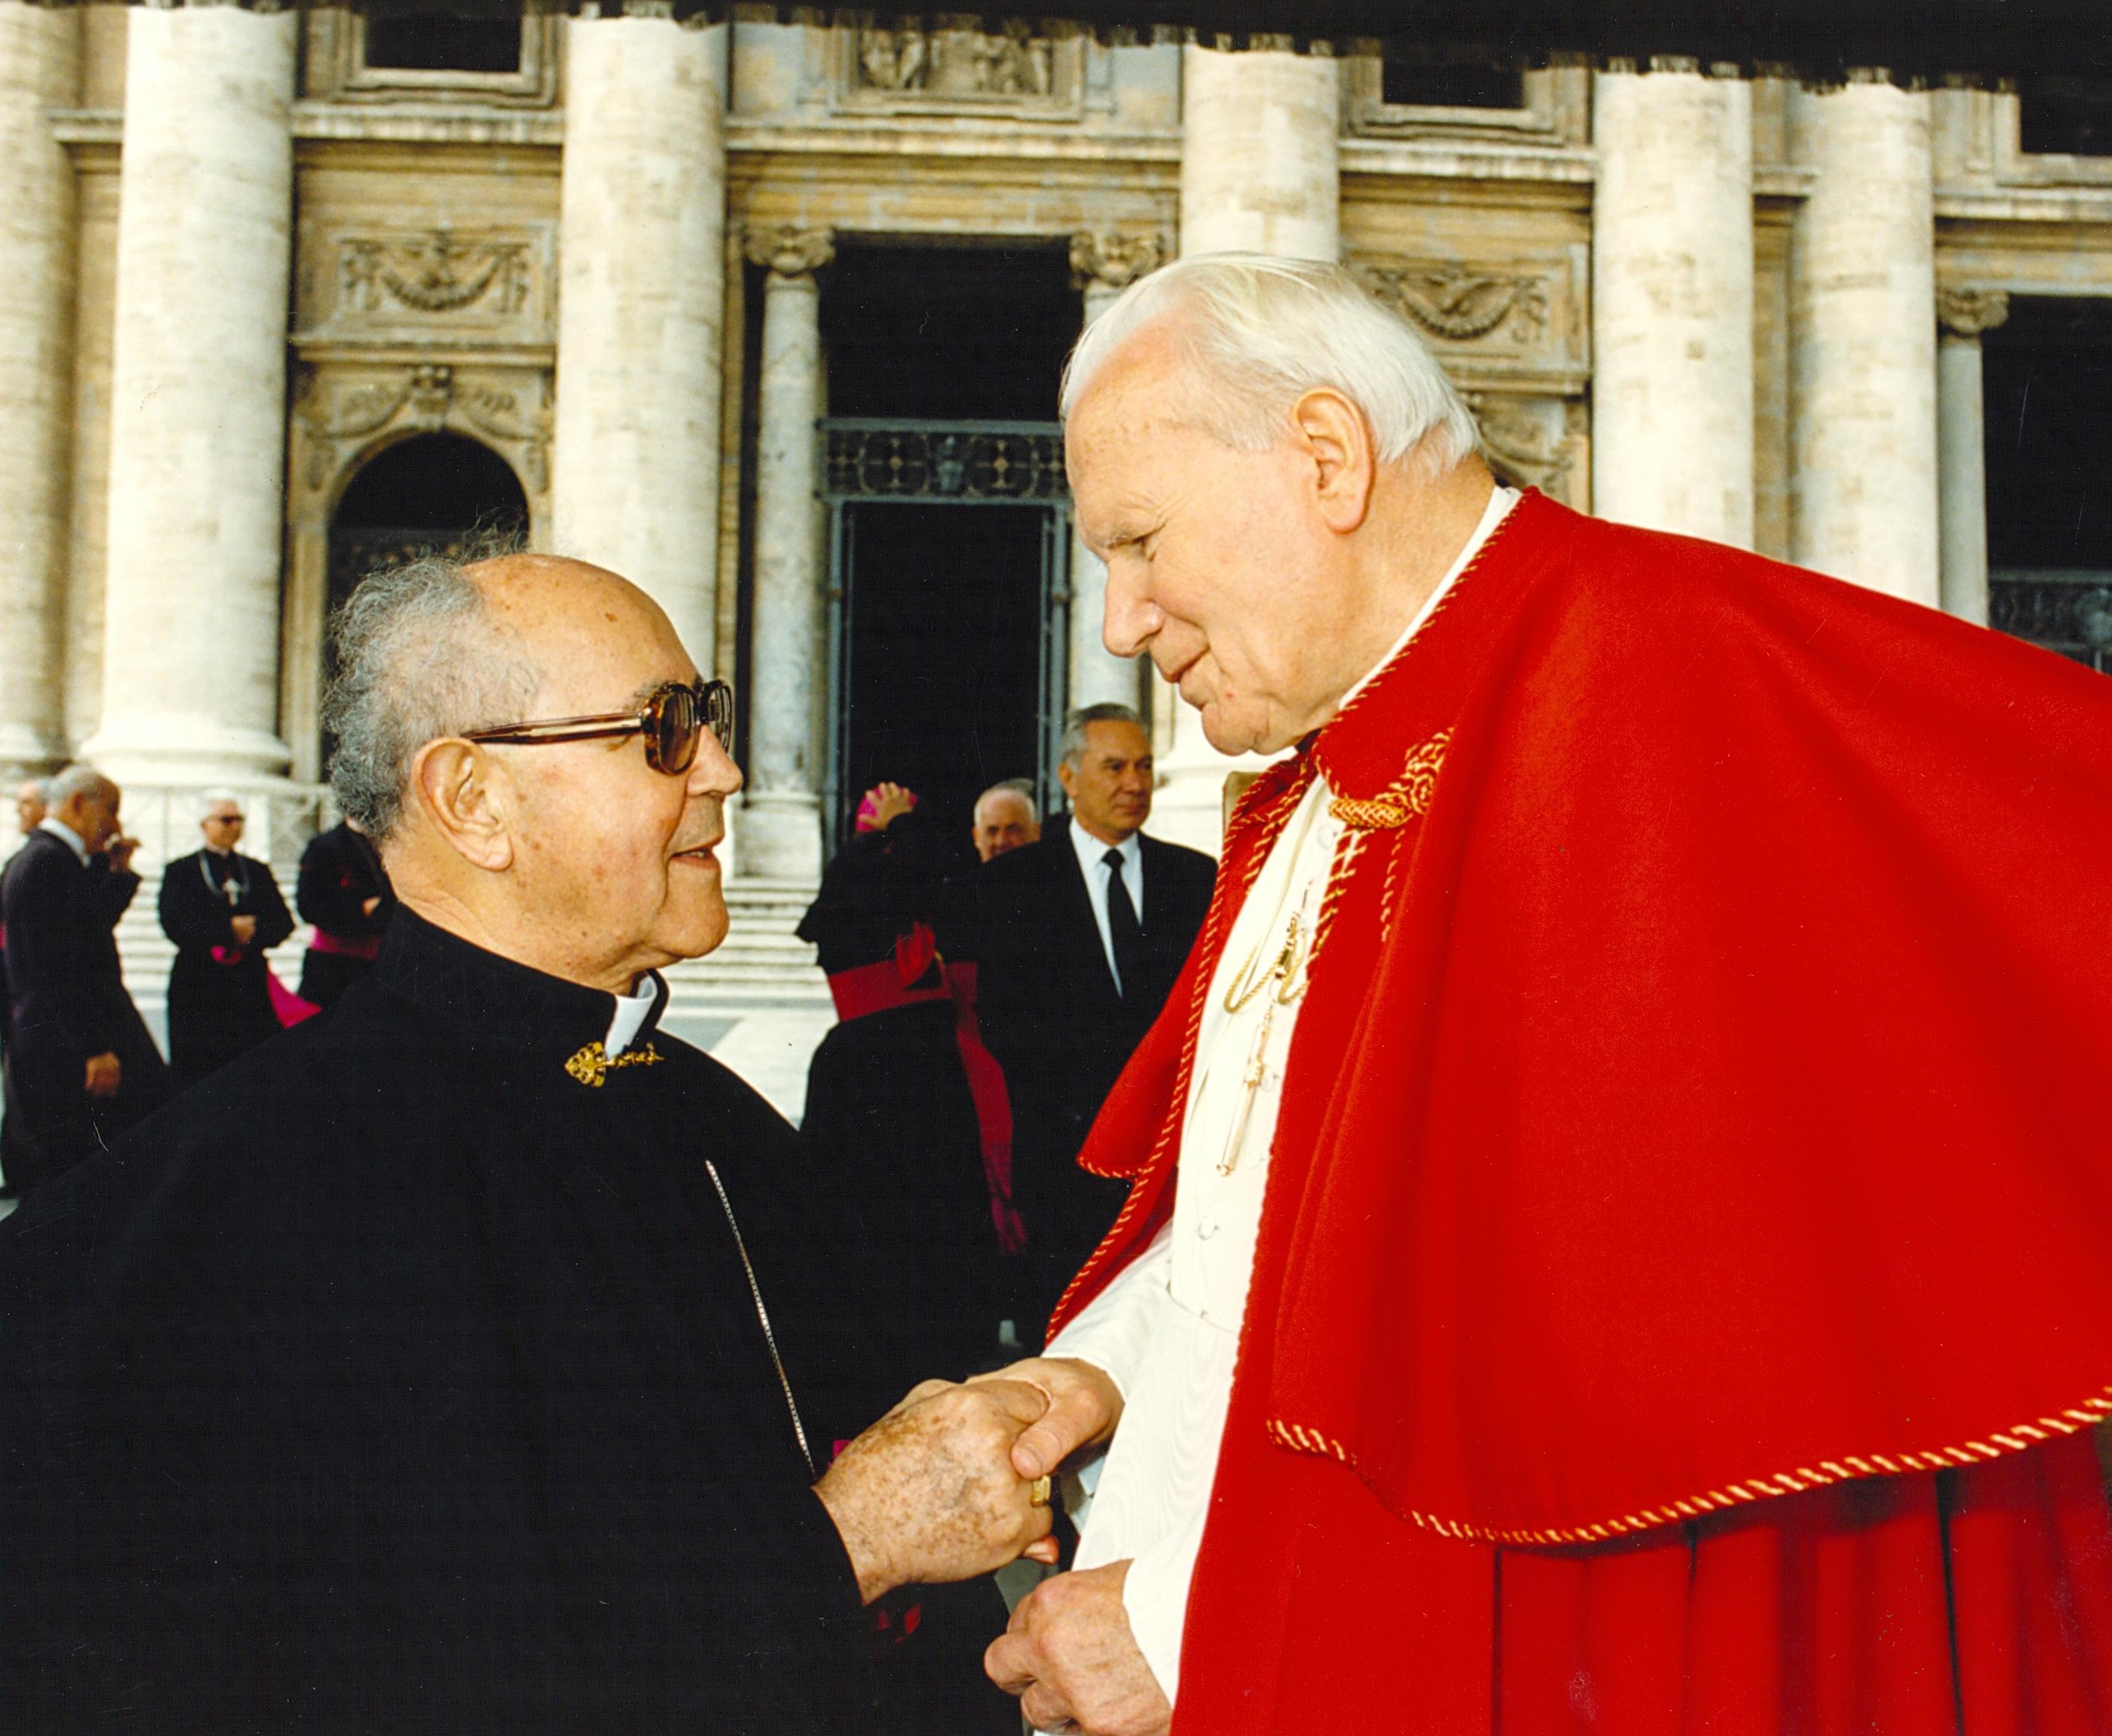 Quando o arcebispo queria excomungar o juiz - 1996